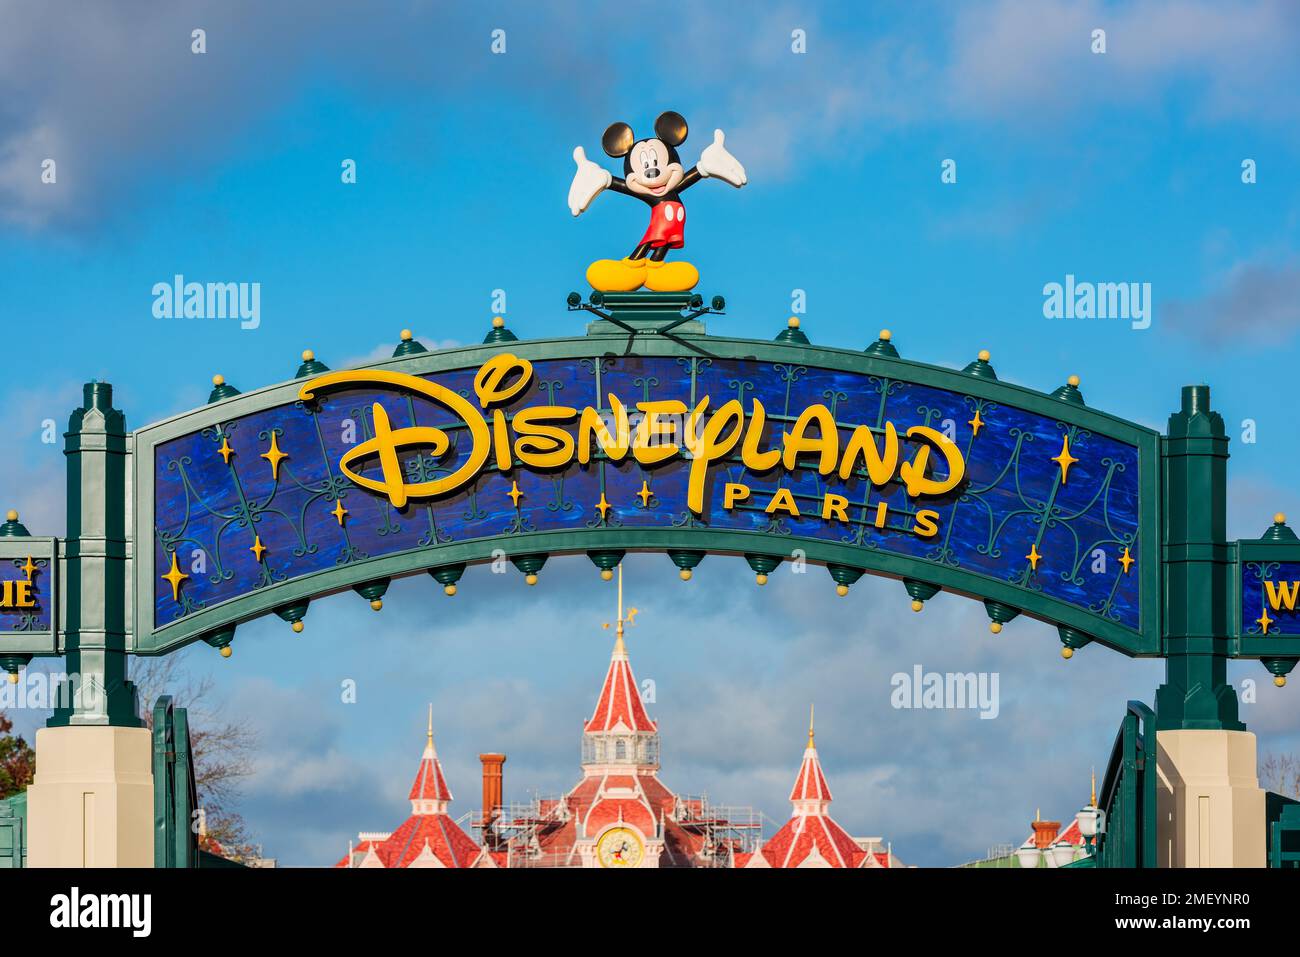 Eingangsschild für Disneyland Paris. Disneyland Paris ist ein Unterhaltungsresort in der Nähe von Paris, Frankreich. Stockfoto